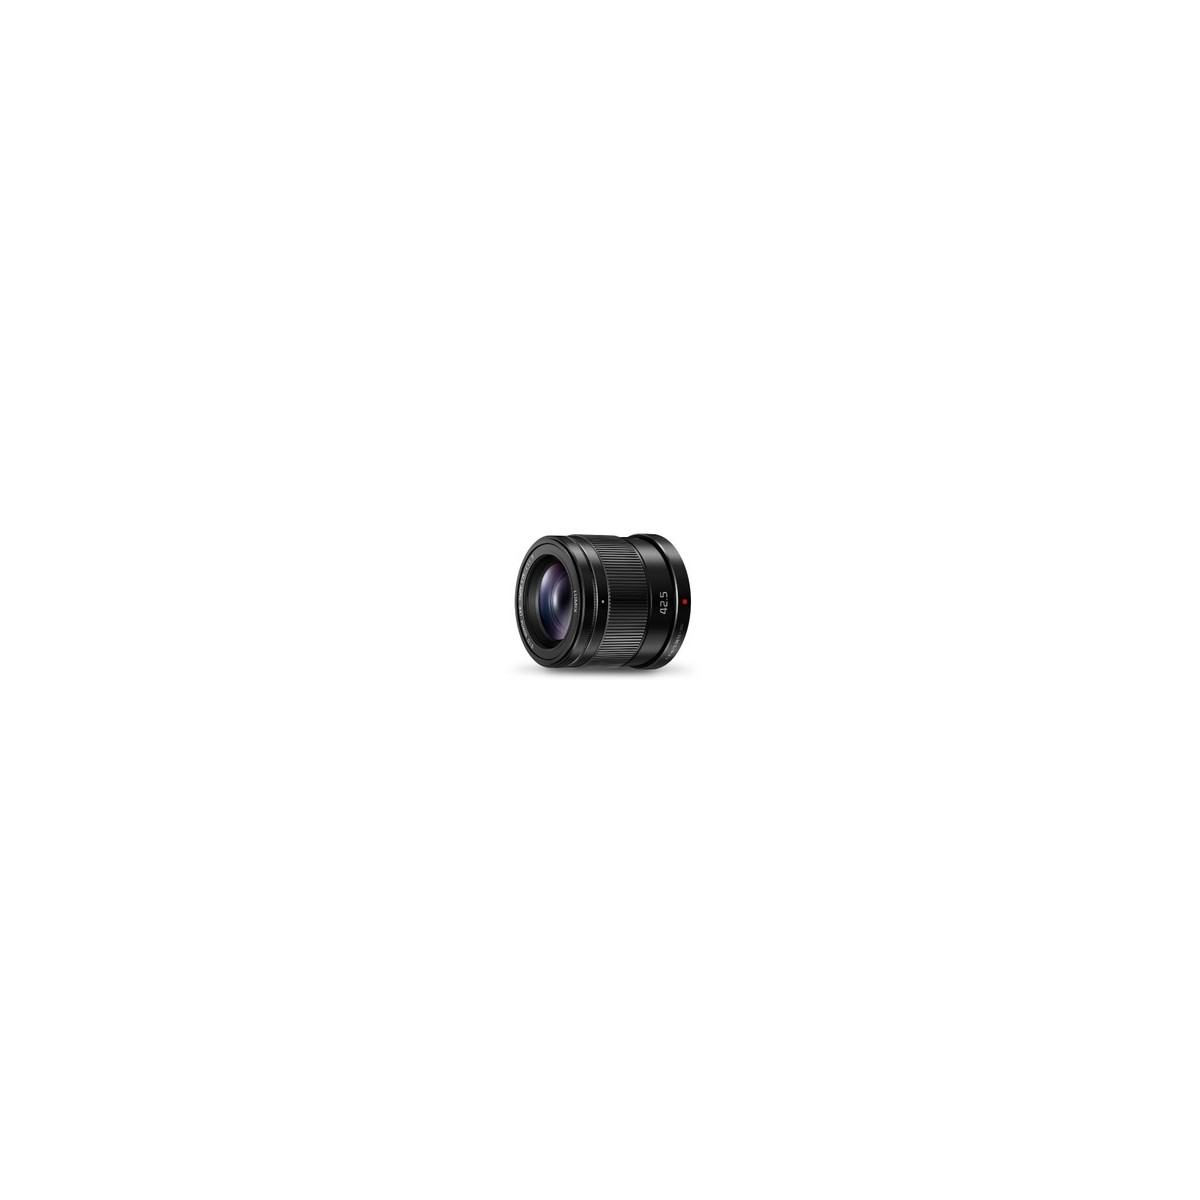 Panasonic H-HS043E - Telephoto lens - 10-8 - Image stabilizer - Micro Four Thirds (MFT)